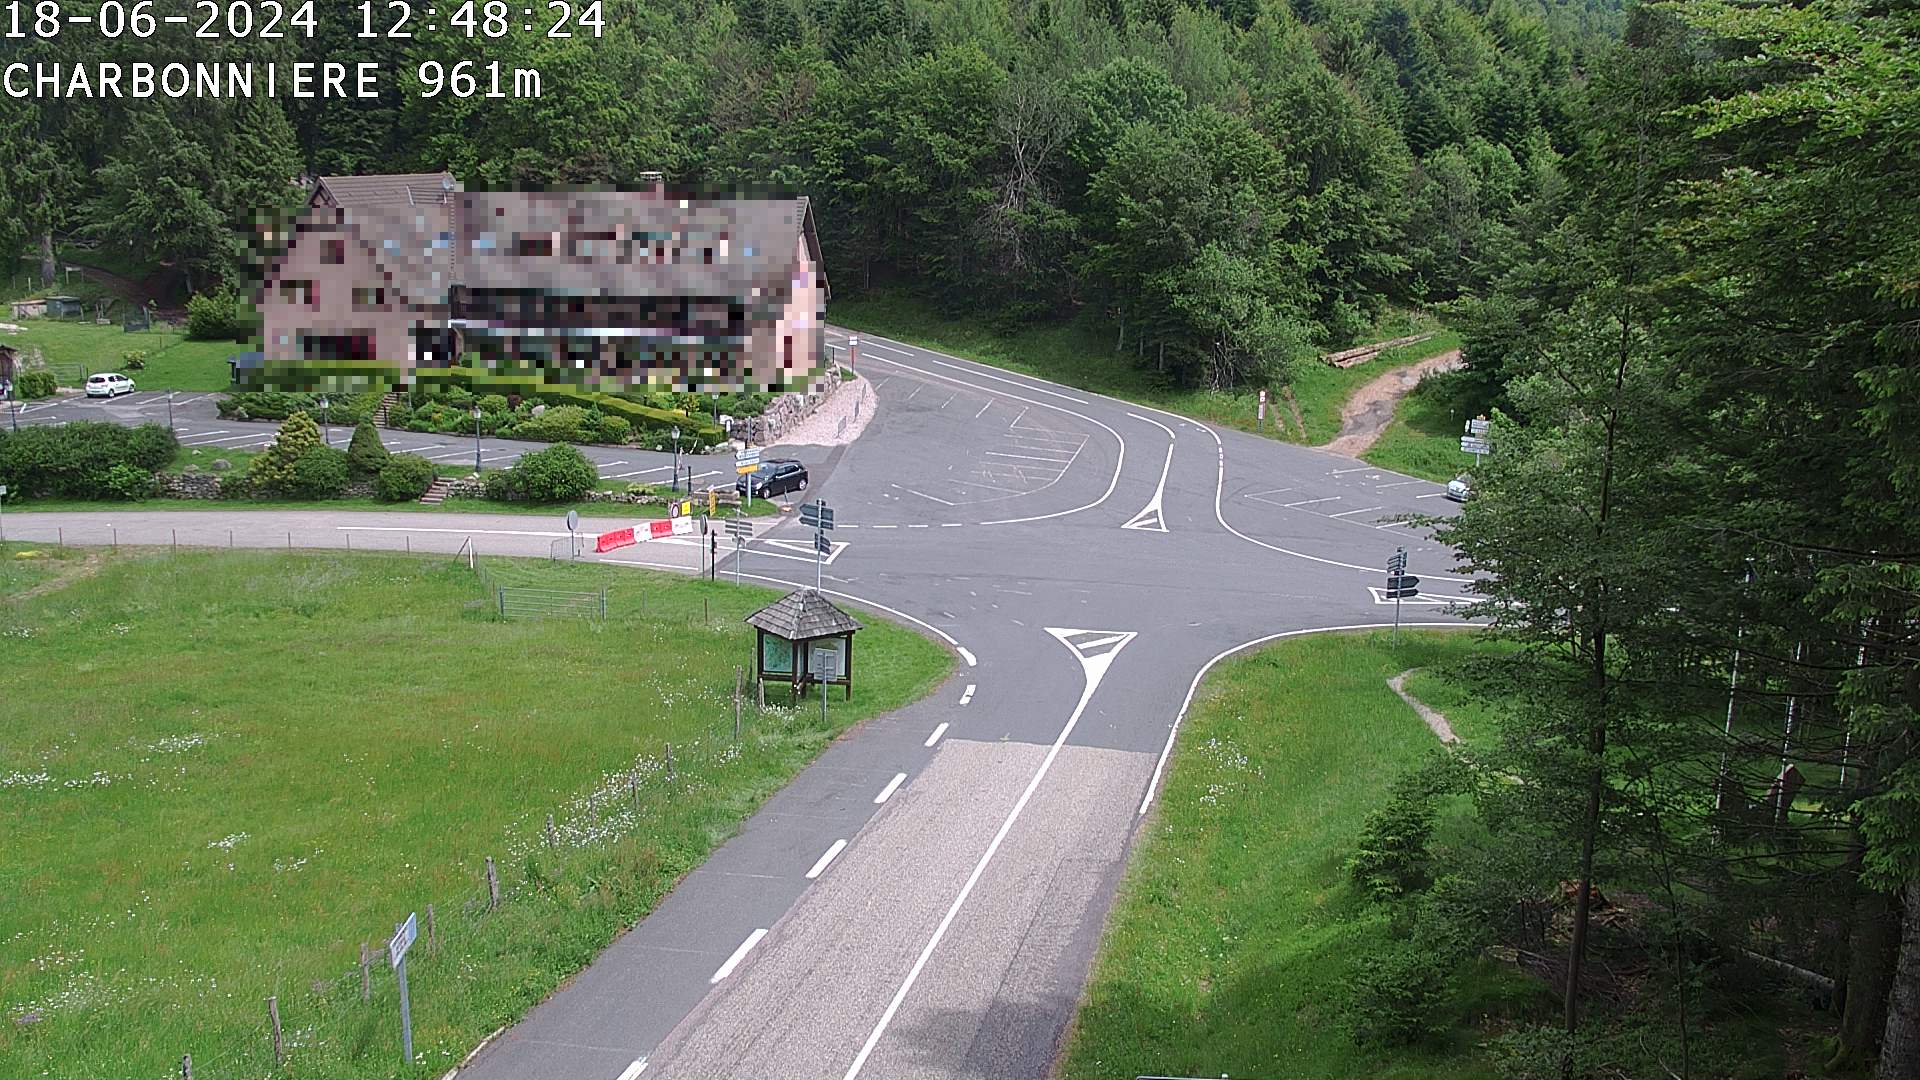 Webcam du col de la Charbonnière dans les Vosges en direction de la station du Champ du feu. Vue sur le D214 et la Tour du Champ du feu. Col de montagne à 961 mètres d'altitude